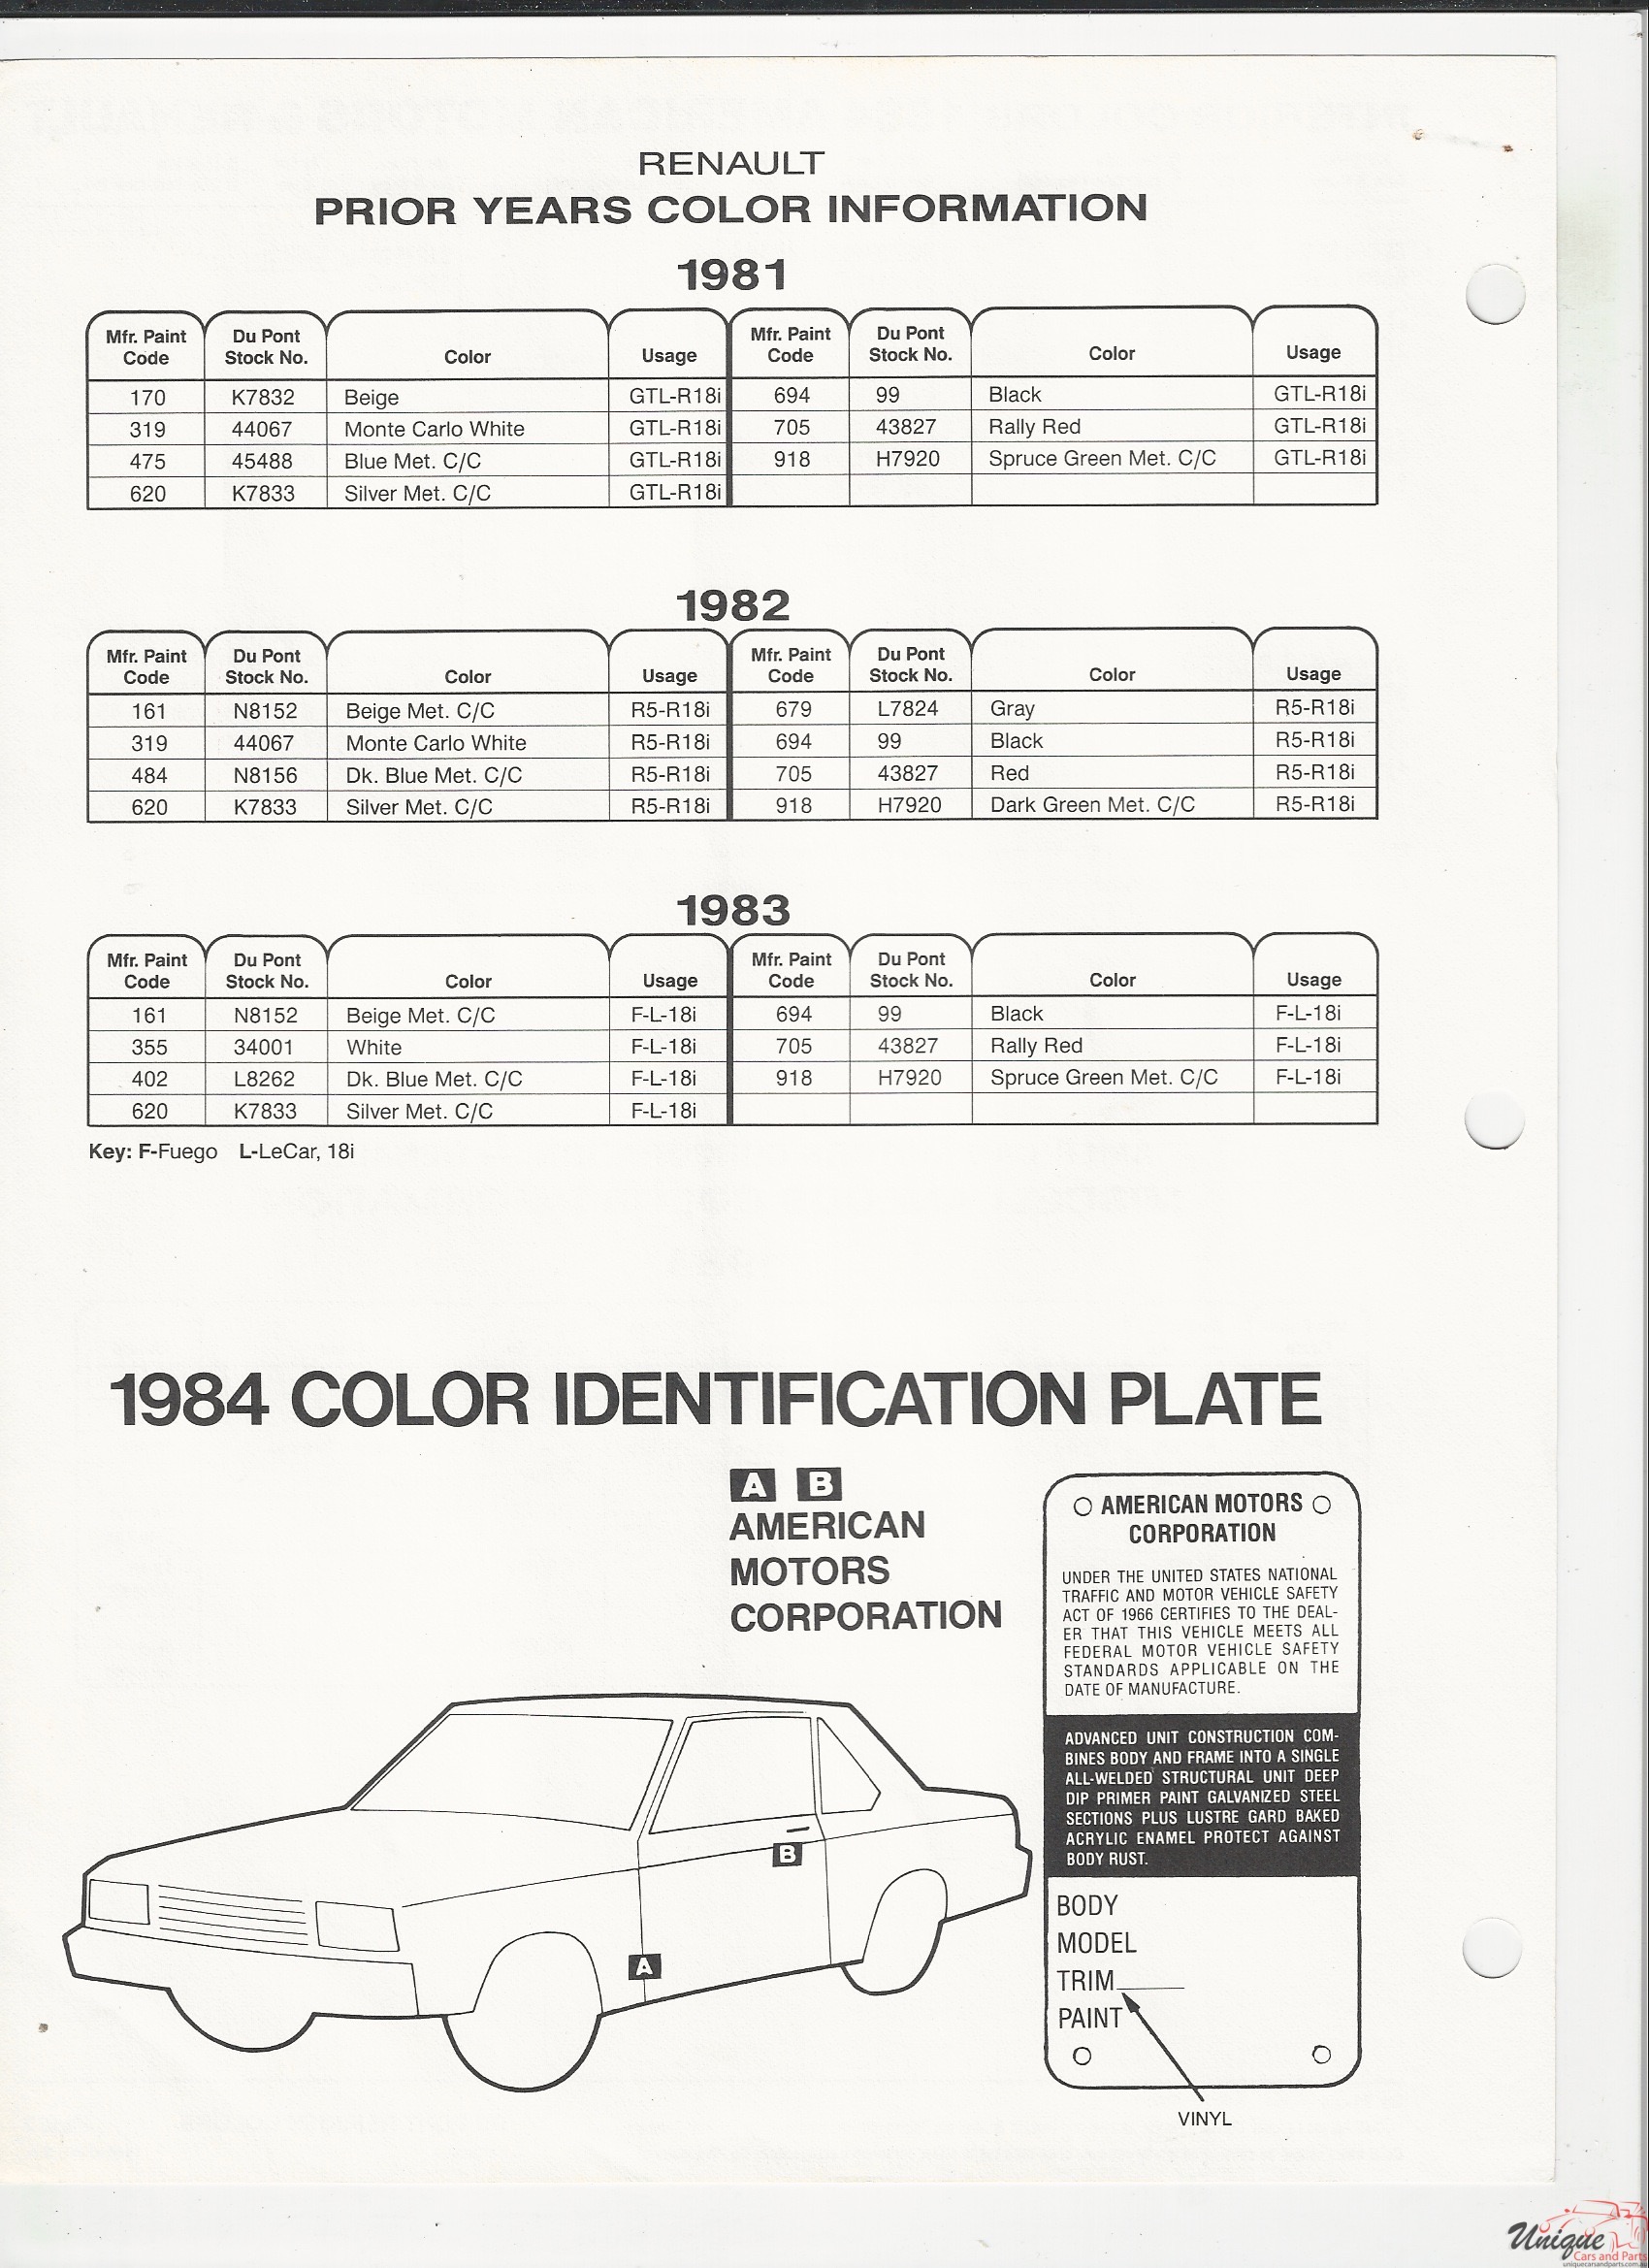 1984 AMC-3 Paint Charts